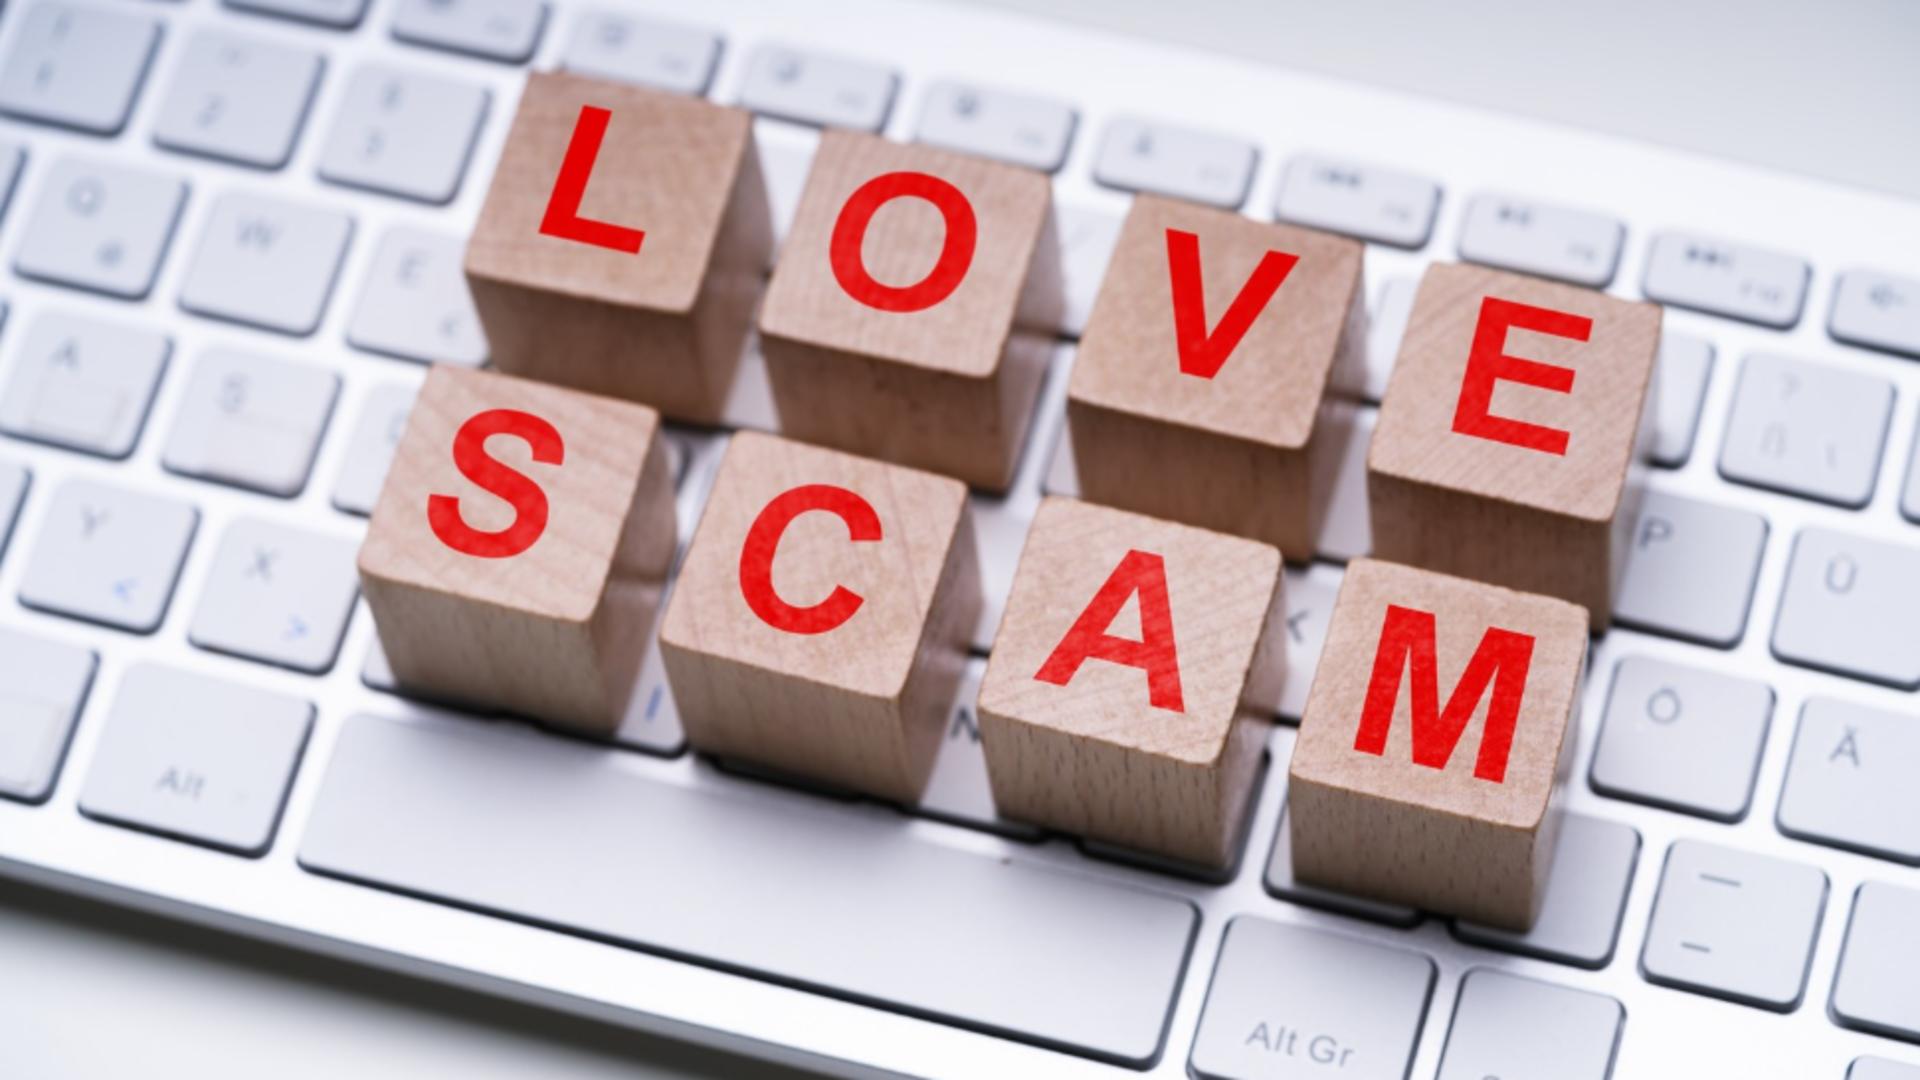 Romantismul, lovit de realitatea cruntă. „Love Scam” – fraudele bazate pe dragoste, ajung la o medie de 14.000 de dolari pe victimă